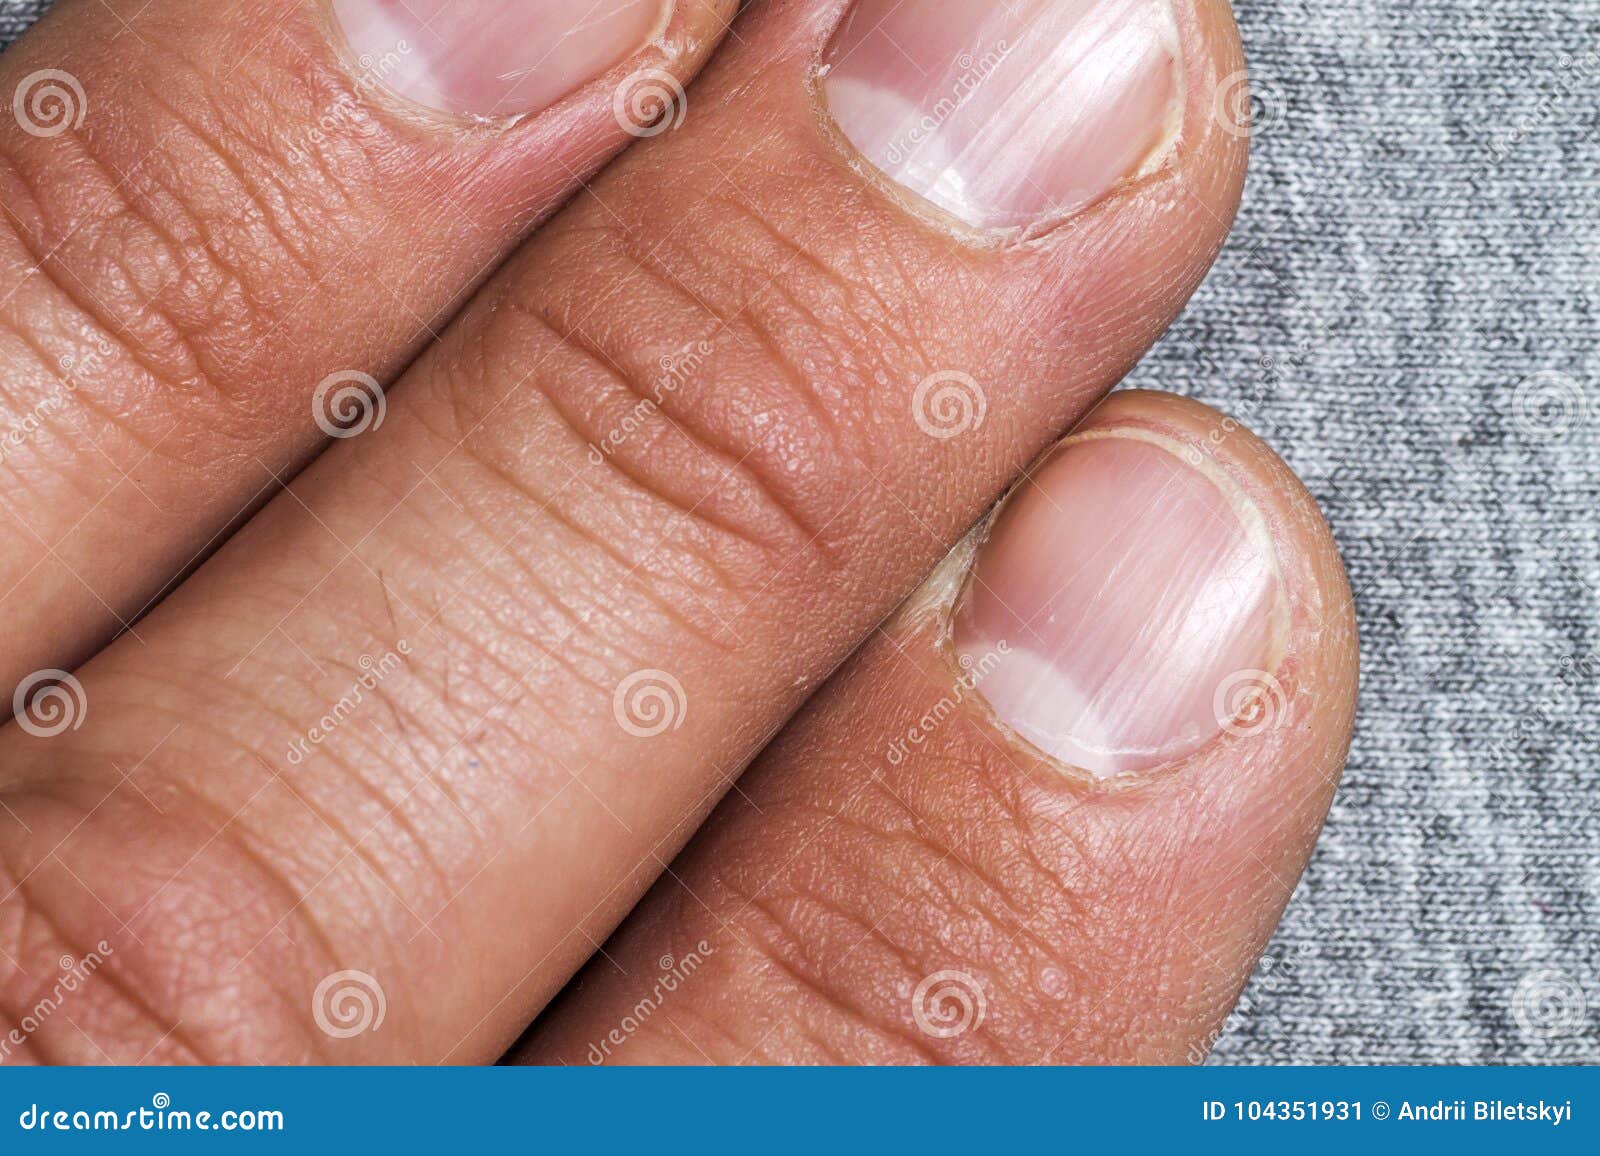 Ногти Человека Фото